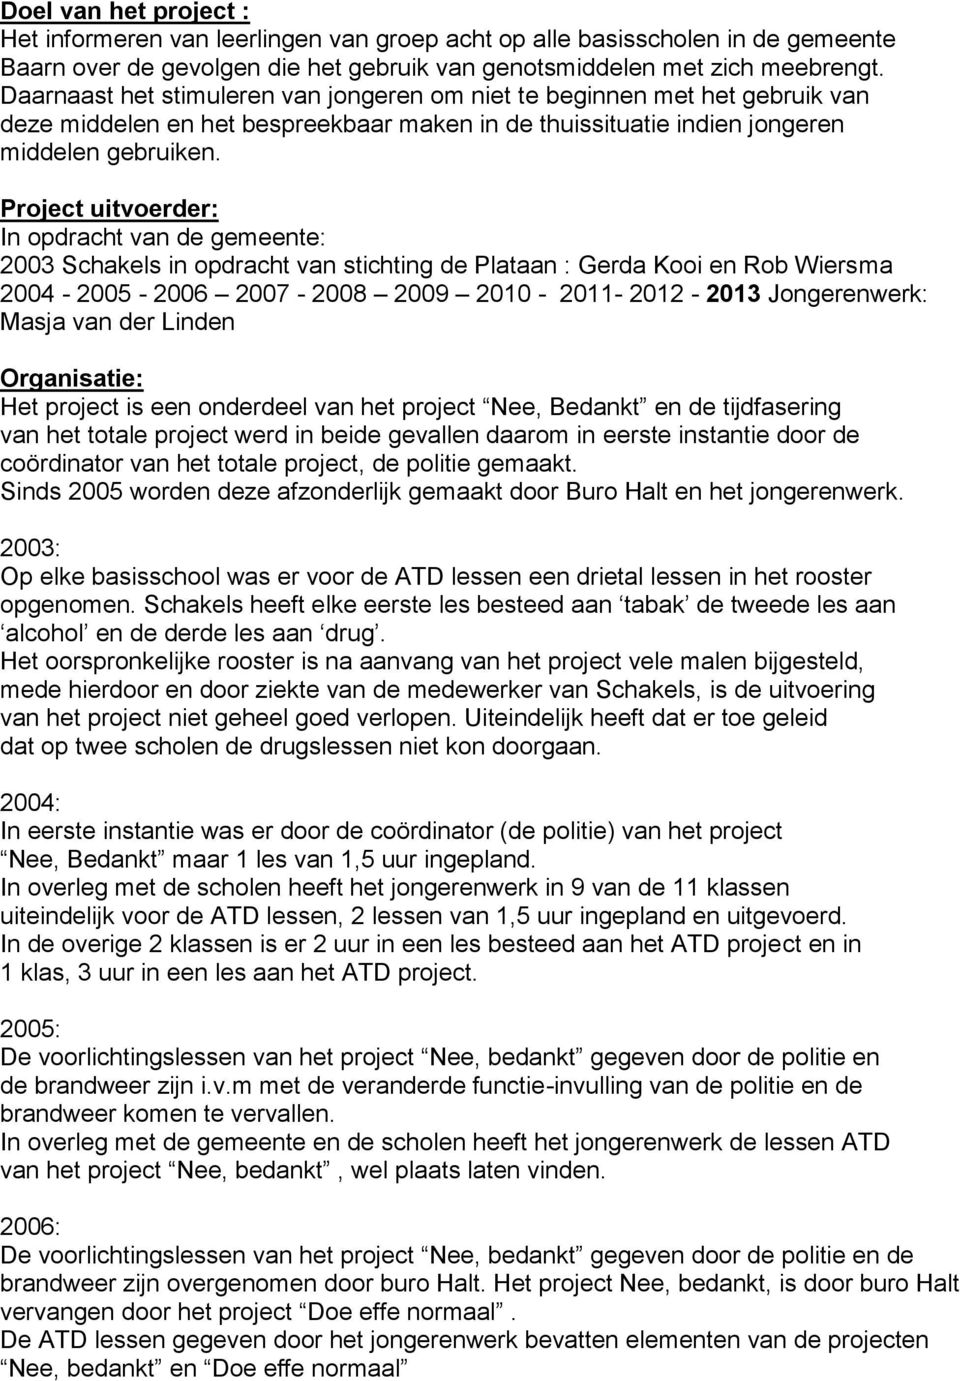 Project uitvoerder: In opdracht van de gemeente: 2003 Schakels in opdracht van stichting de Plataan : Gerda Kooi en Rob Wiersma 2004-2005 - 2006 2007-2008 2009 2010-2011- 2012 - Jongerenwerk: Masja